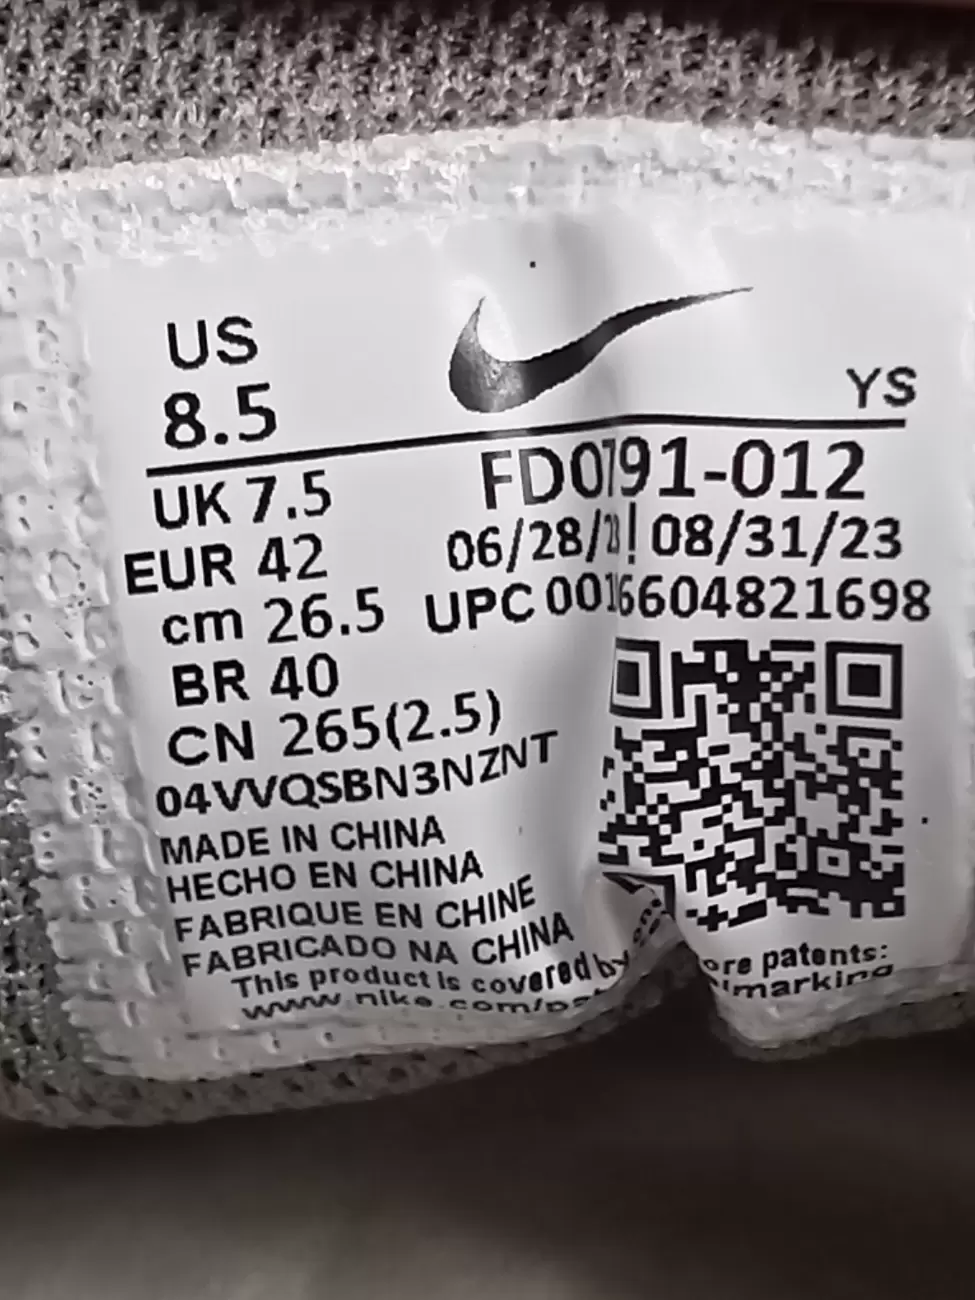 924 - Nike Zoom Vomero 5 SP Vast Grey | Item Details - AG Lab | AfterMarket